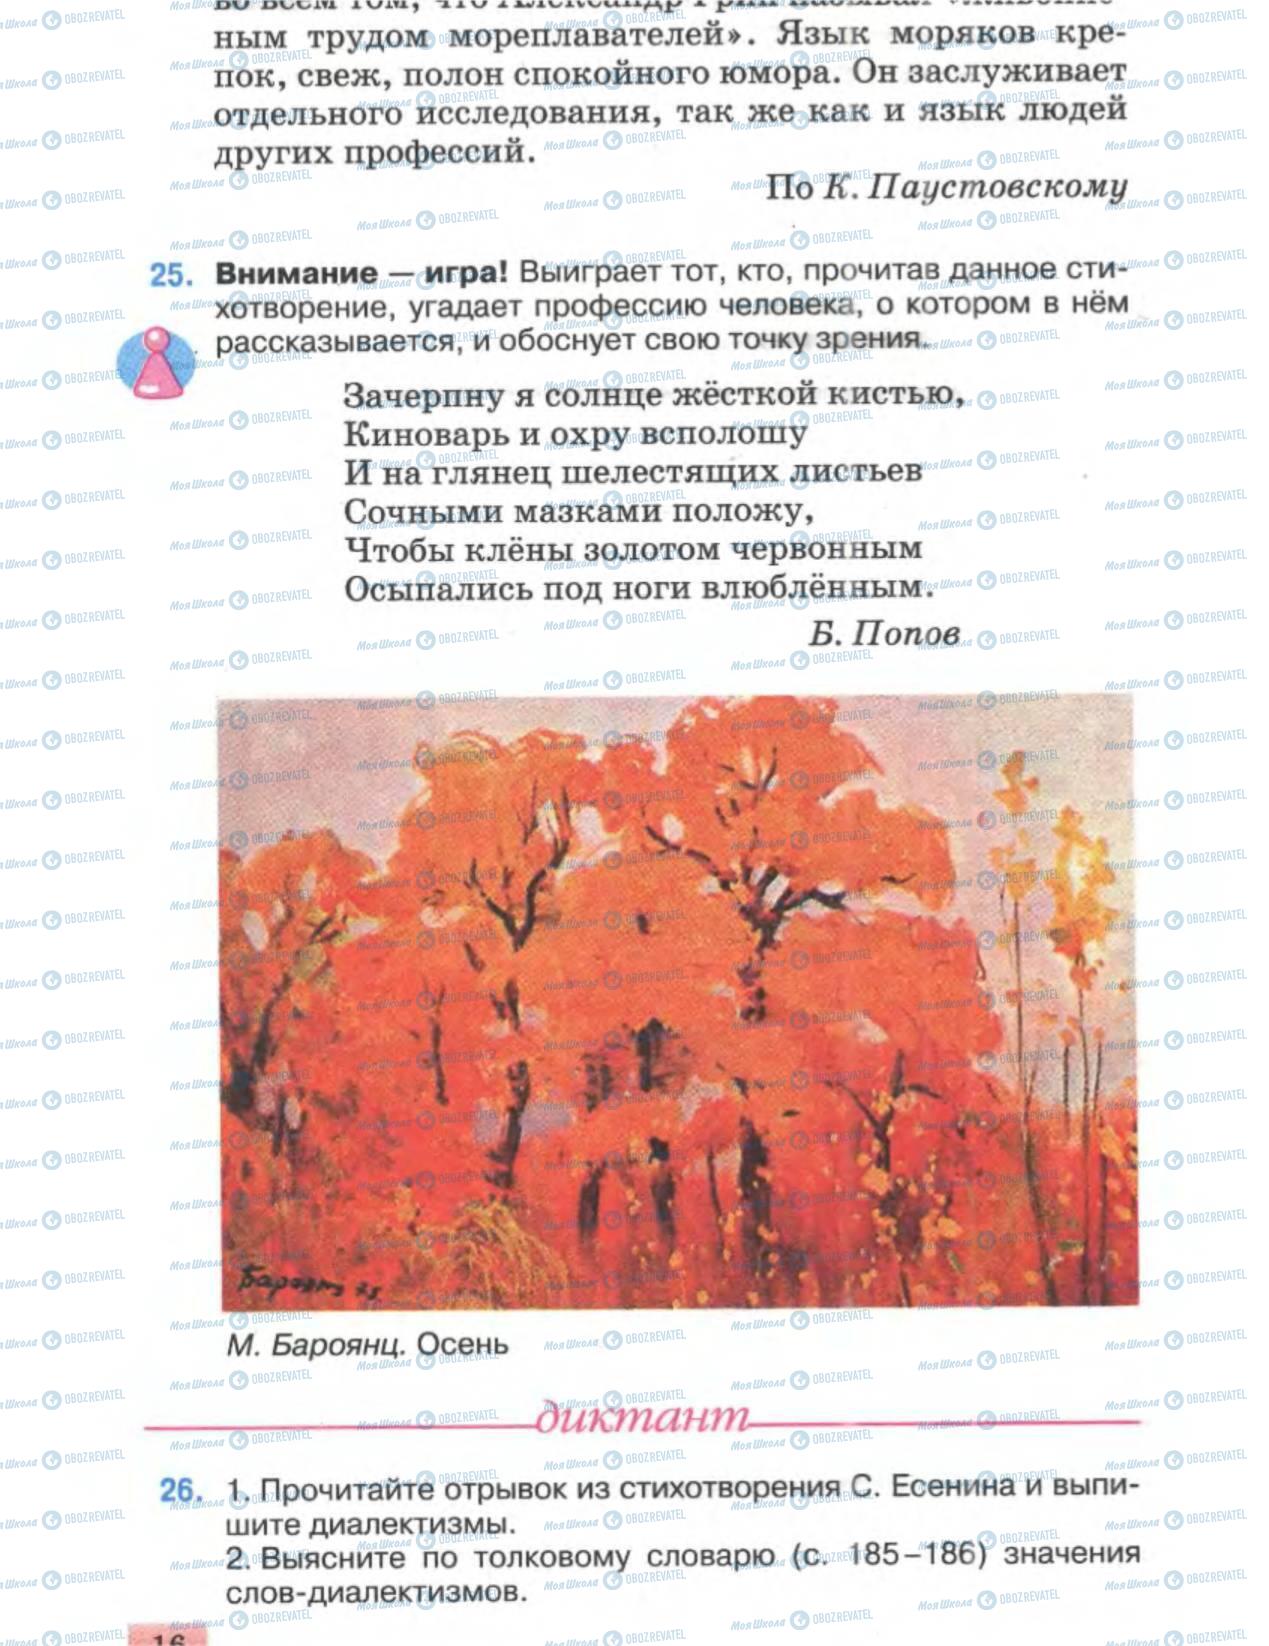 Підручники Російська мова 6 клас сторінка 16